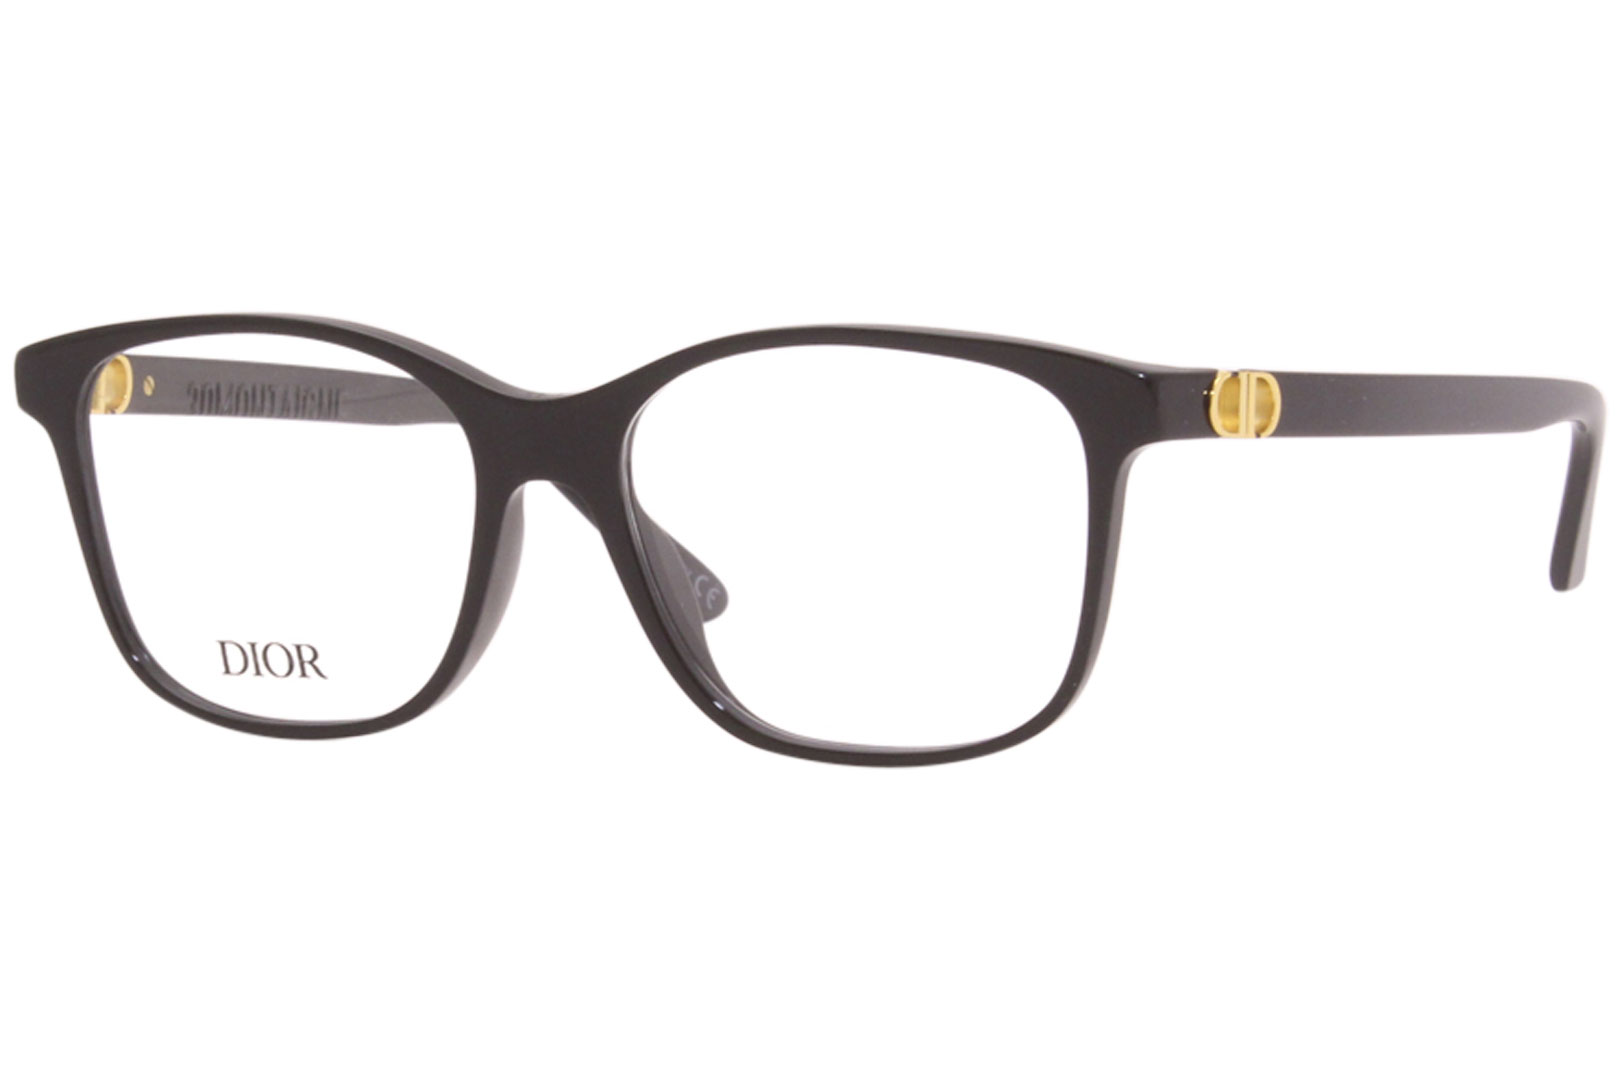 Christian Dior 30MontaigneMiniOBI CD50009I Eyeglasses Square Optical Frame   EyeSpecscom